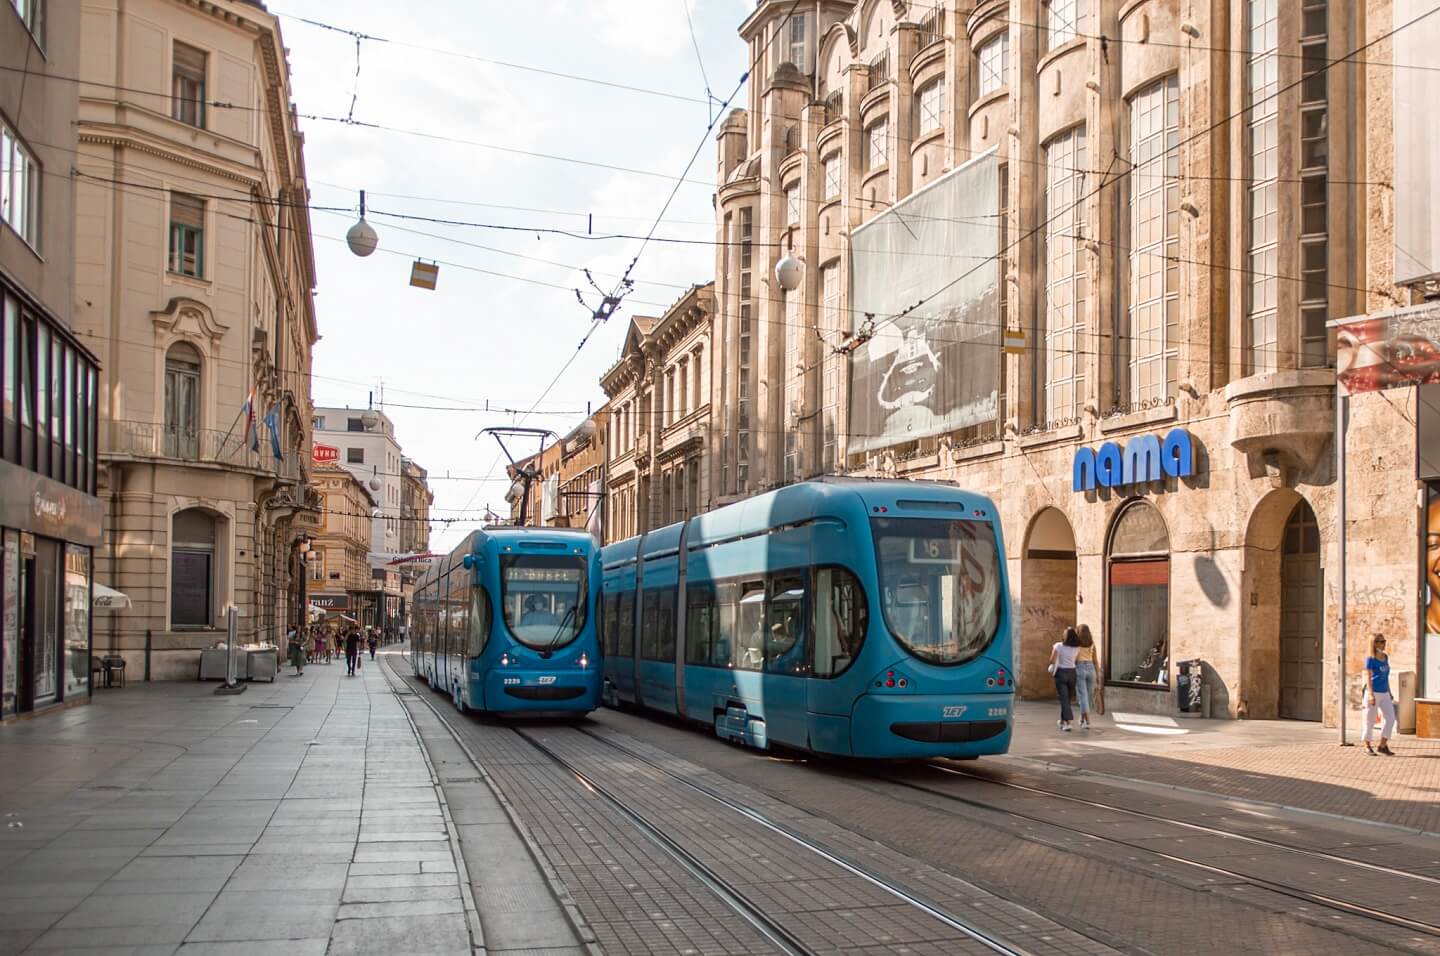 Take a tram in Zagreb